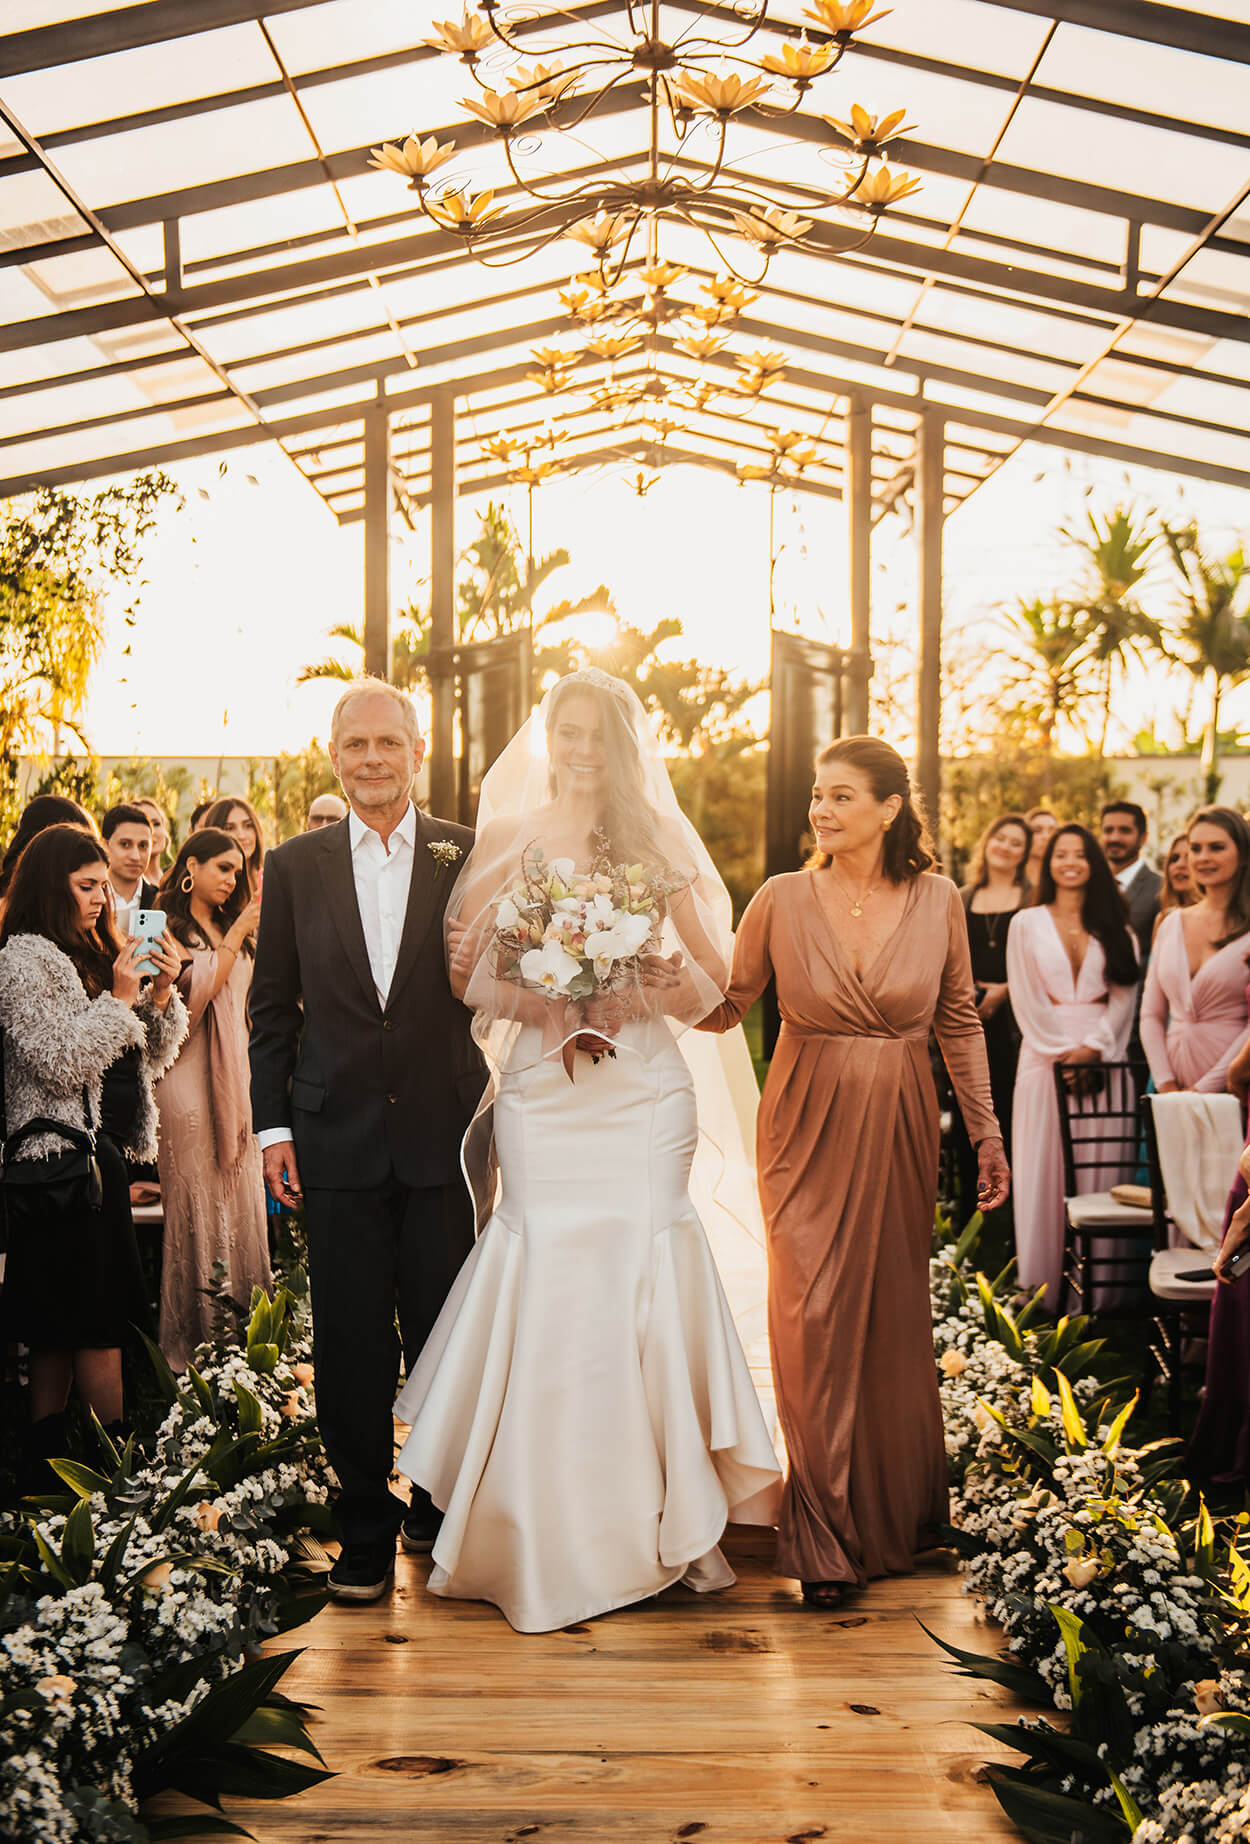 entrada da noiva com véu no rosto acompanhada do pai com terno preto e mãe com vestido rose com decote v